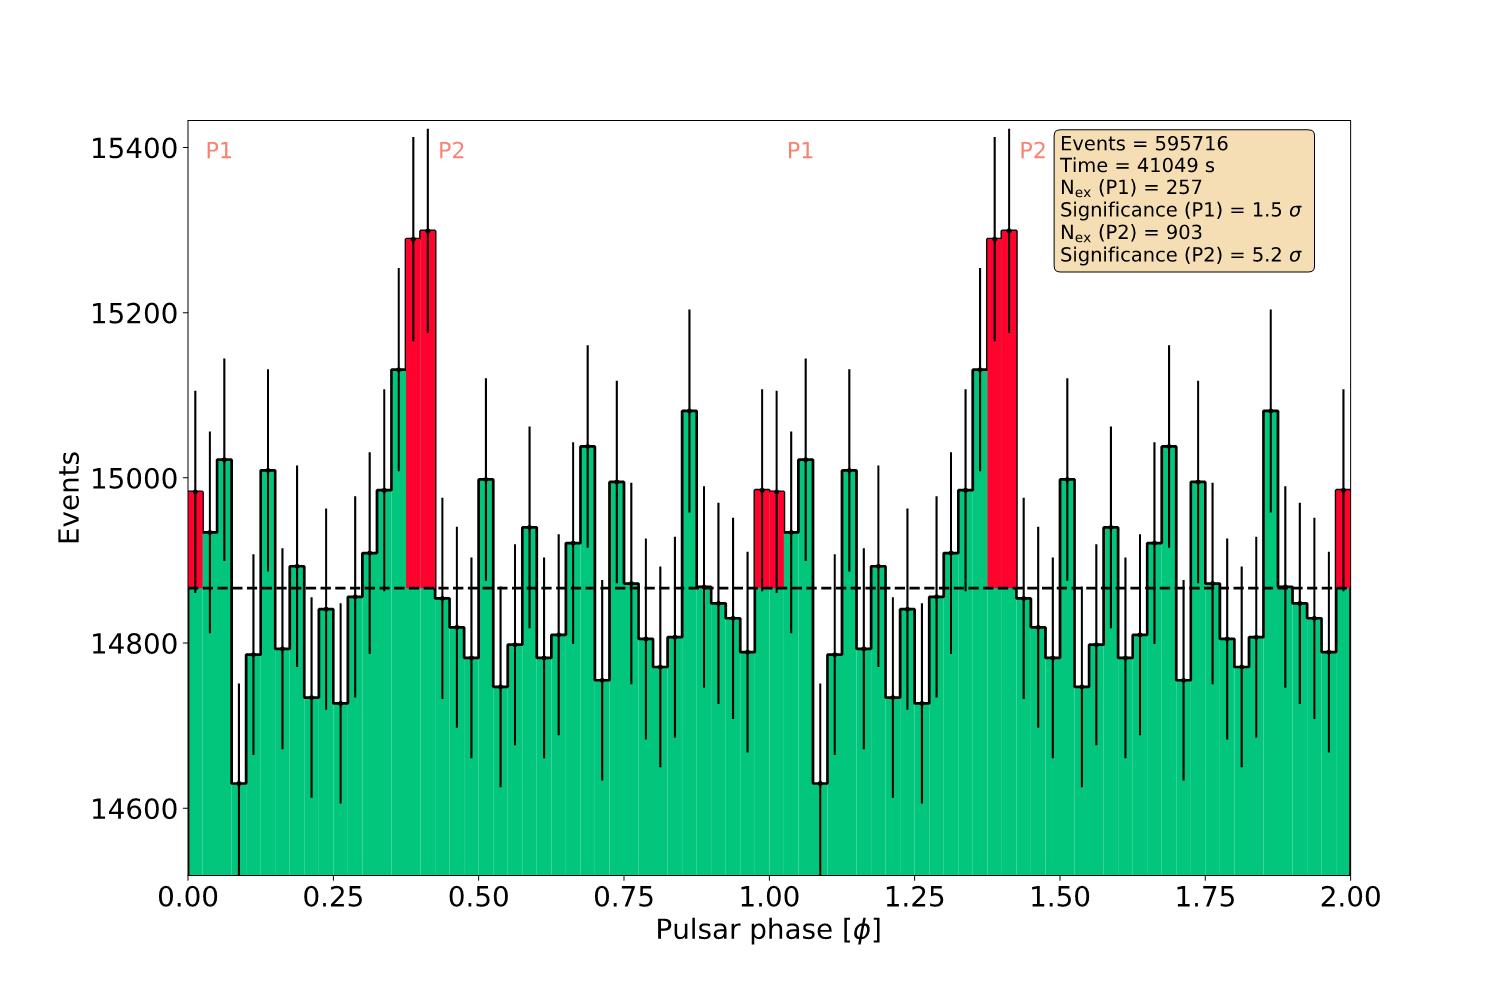 Emisión de rayos gamma del Pulsar del Cangrejo medida por el LST-1 en función de la fase de rotación del púlsar. Durante las fases P1 y P2, el púlsar emite pulsos de rayos gamma. Crédito: Colaboración LST.